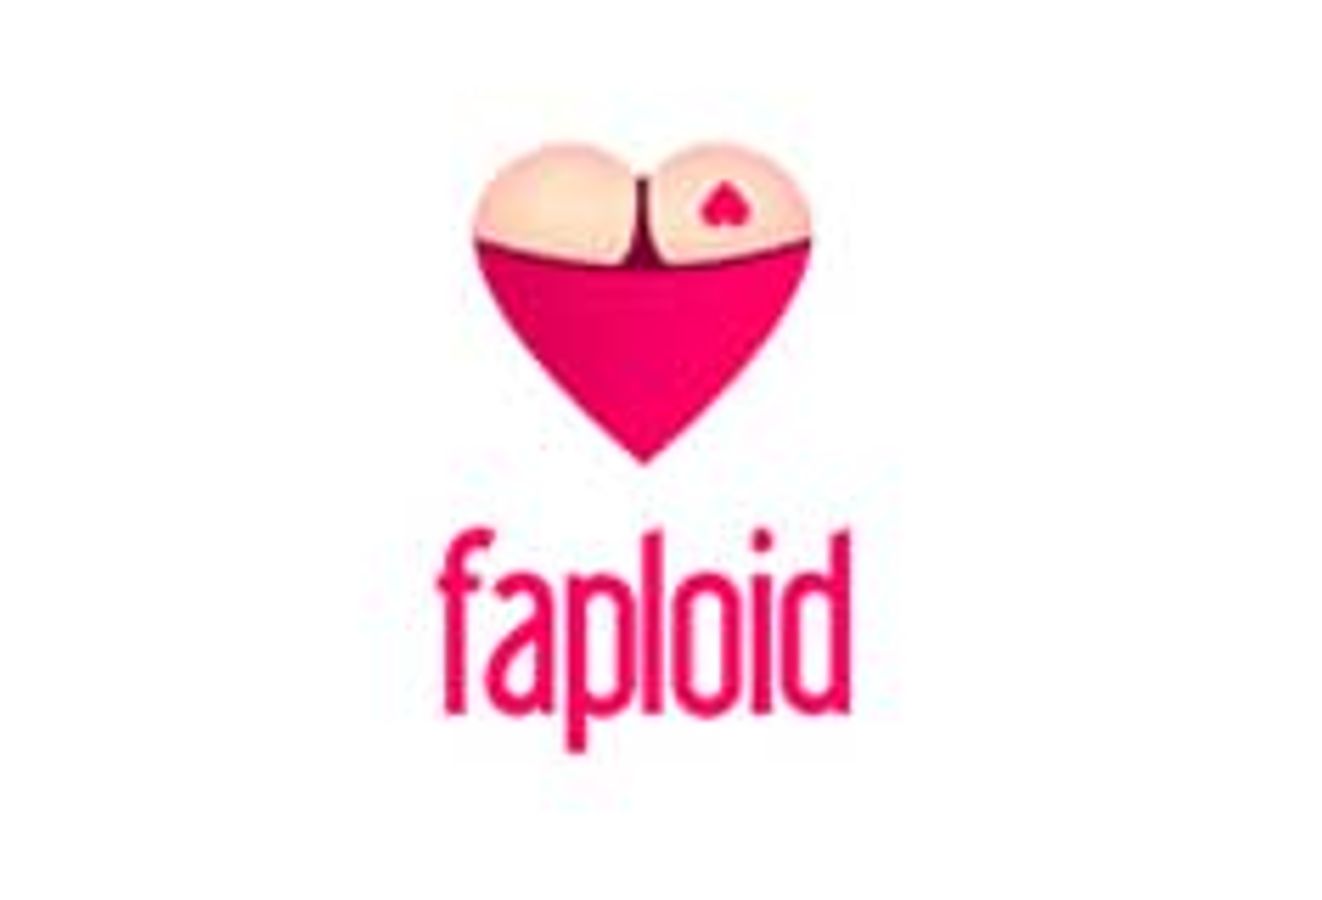 Faploid.com